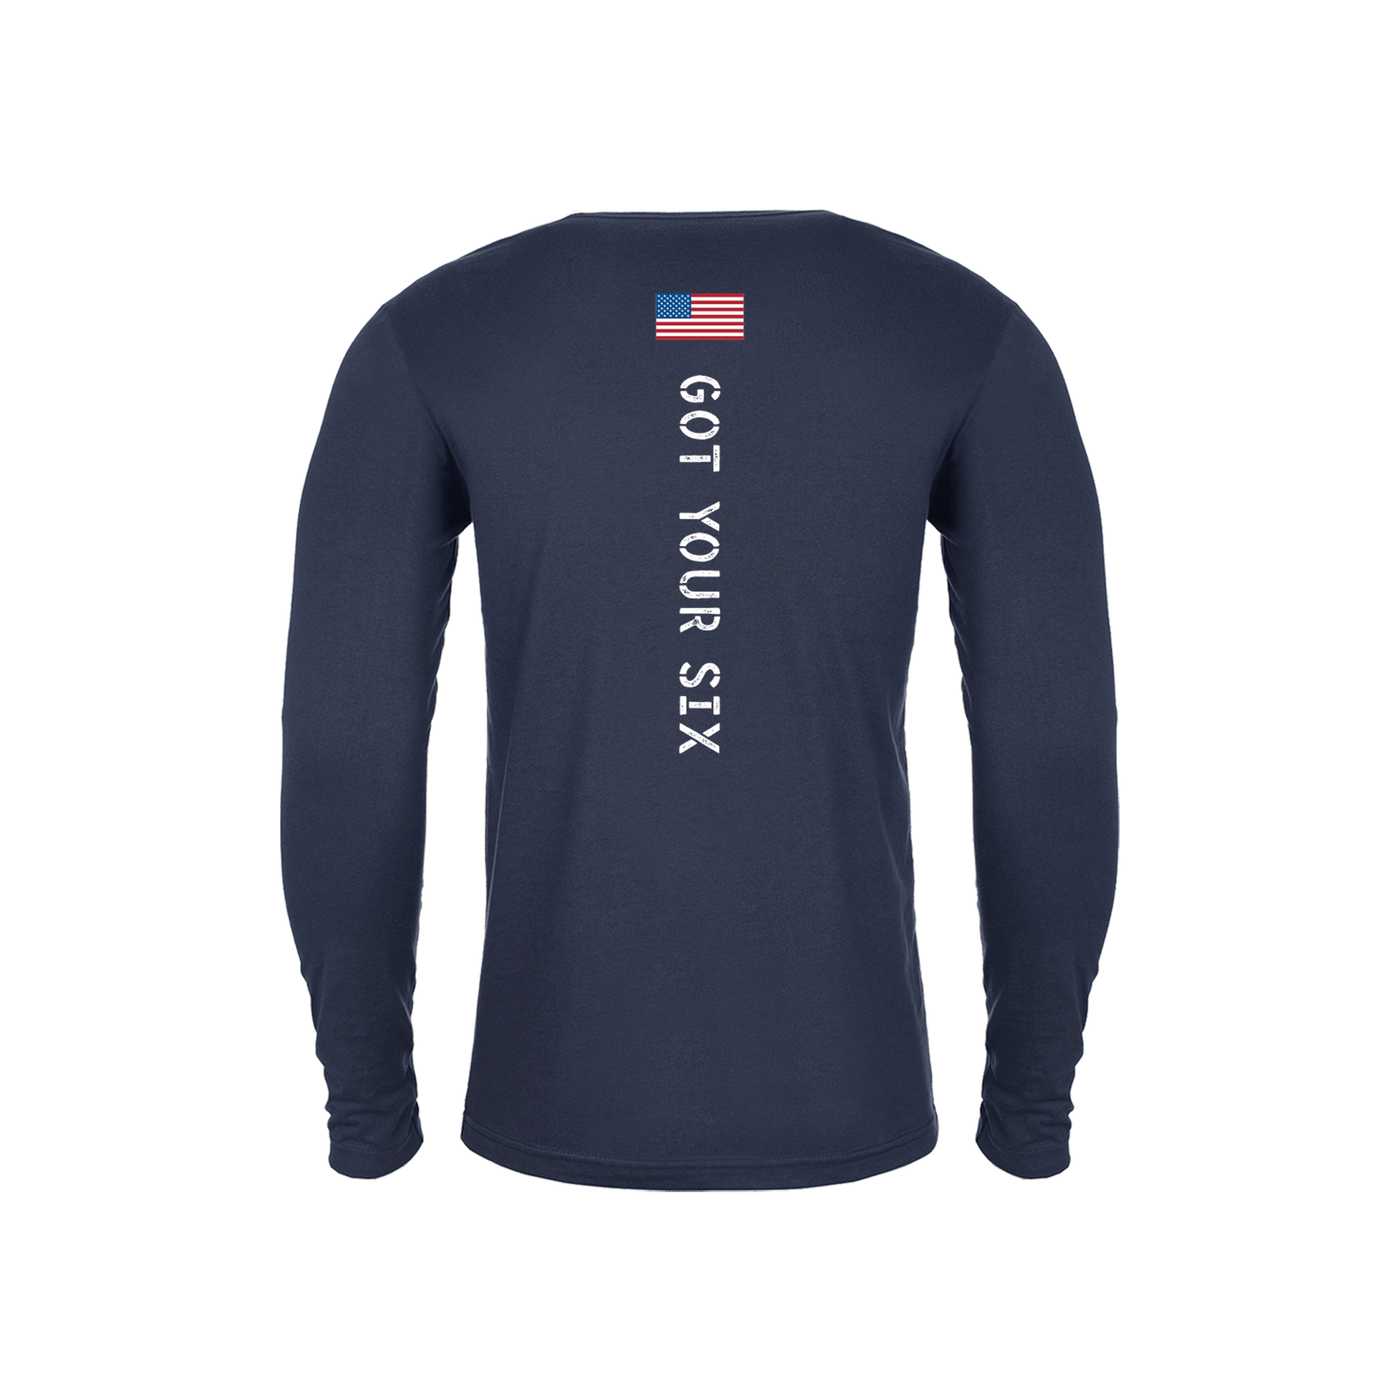 Got Your Six - Long Sleeve Technical Shirt - Navy